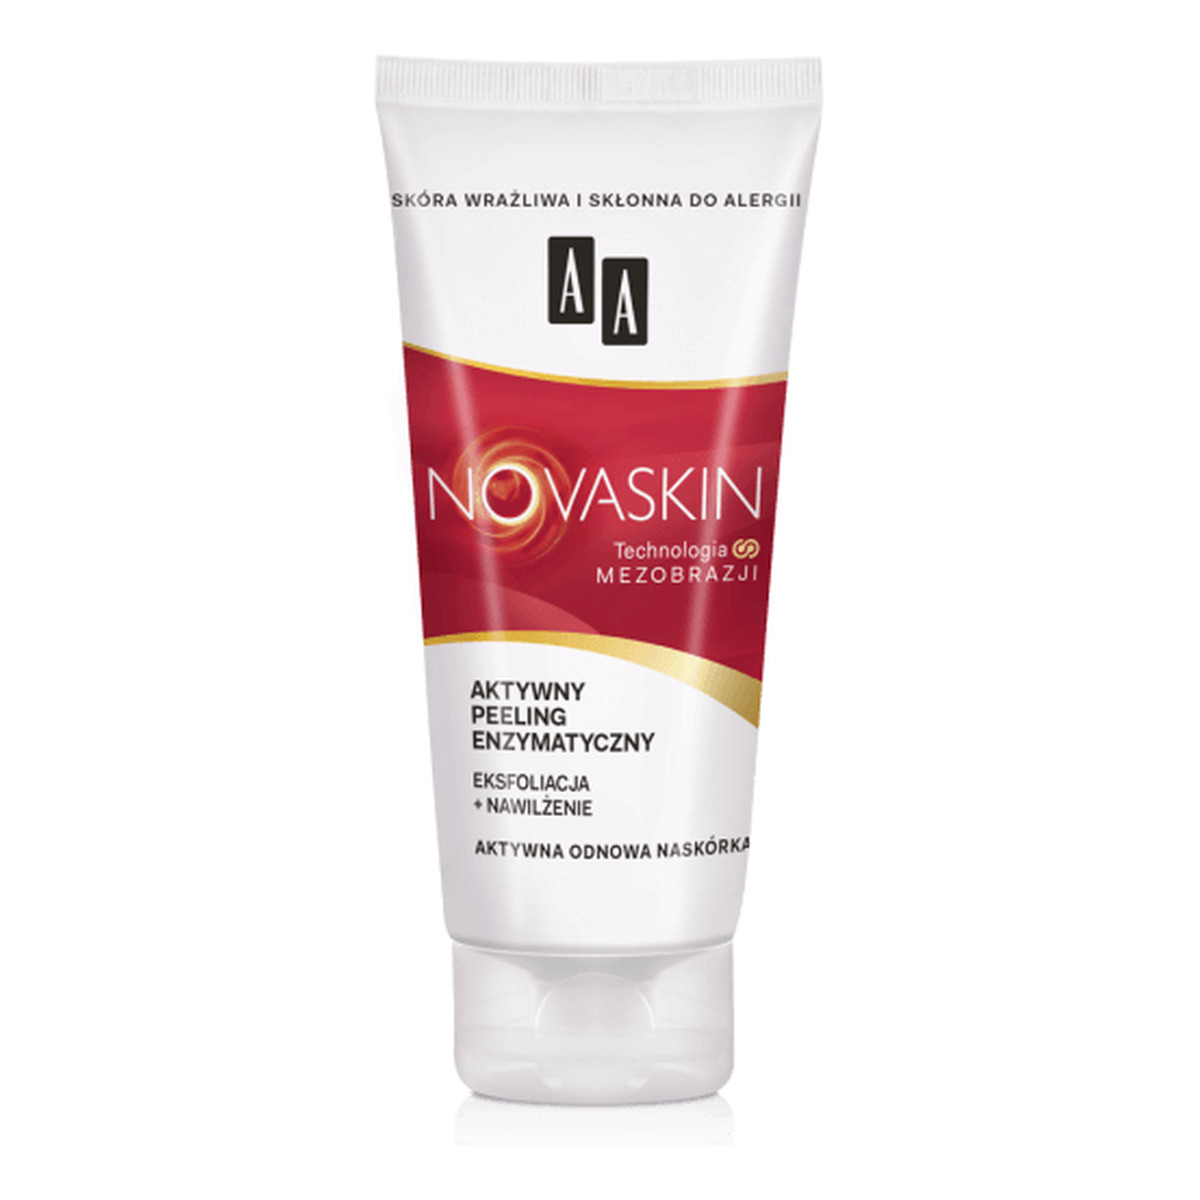 AA Novaskin Cosmetics Technologia Mezobrazji aktywny peeling enzymatyczny 75ml